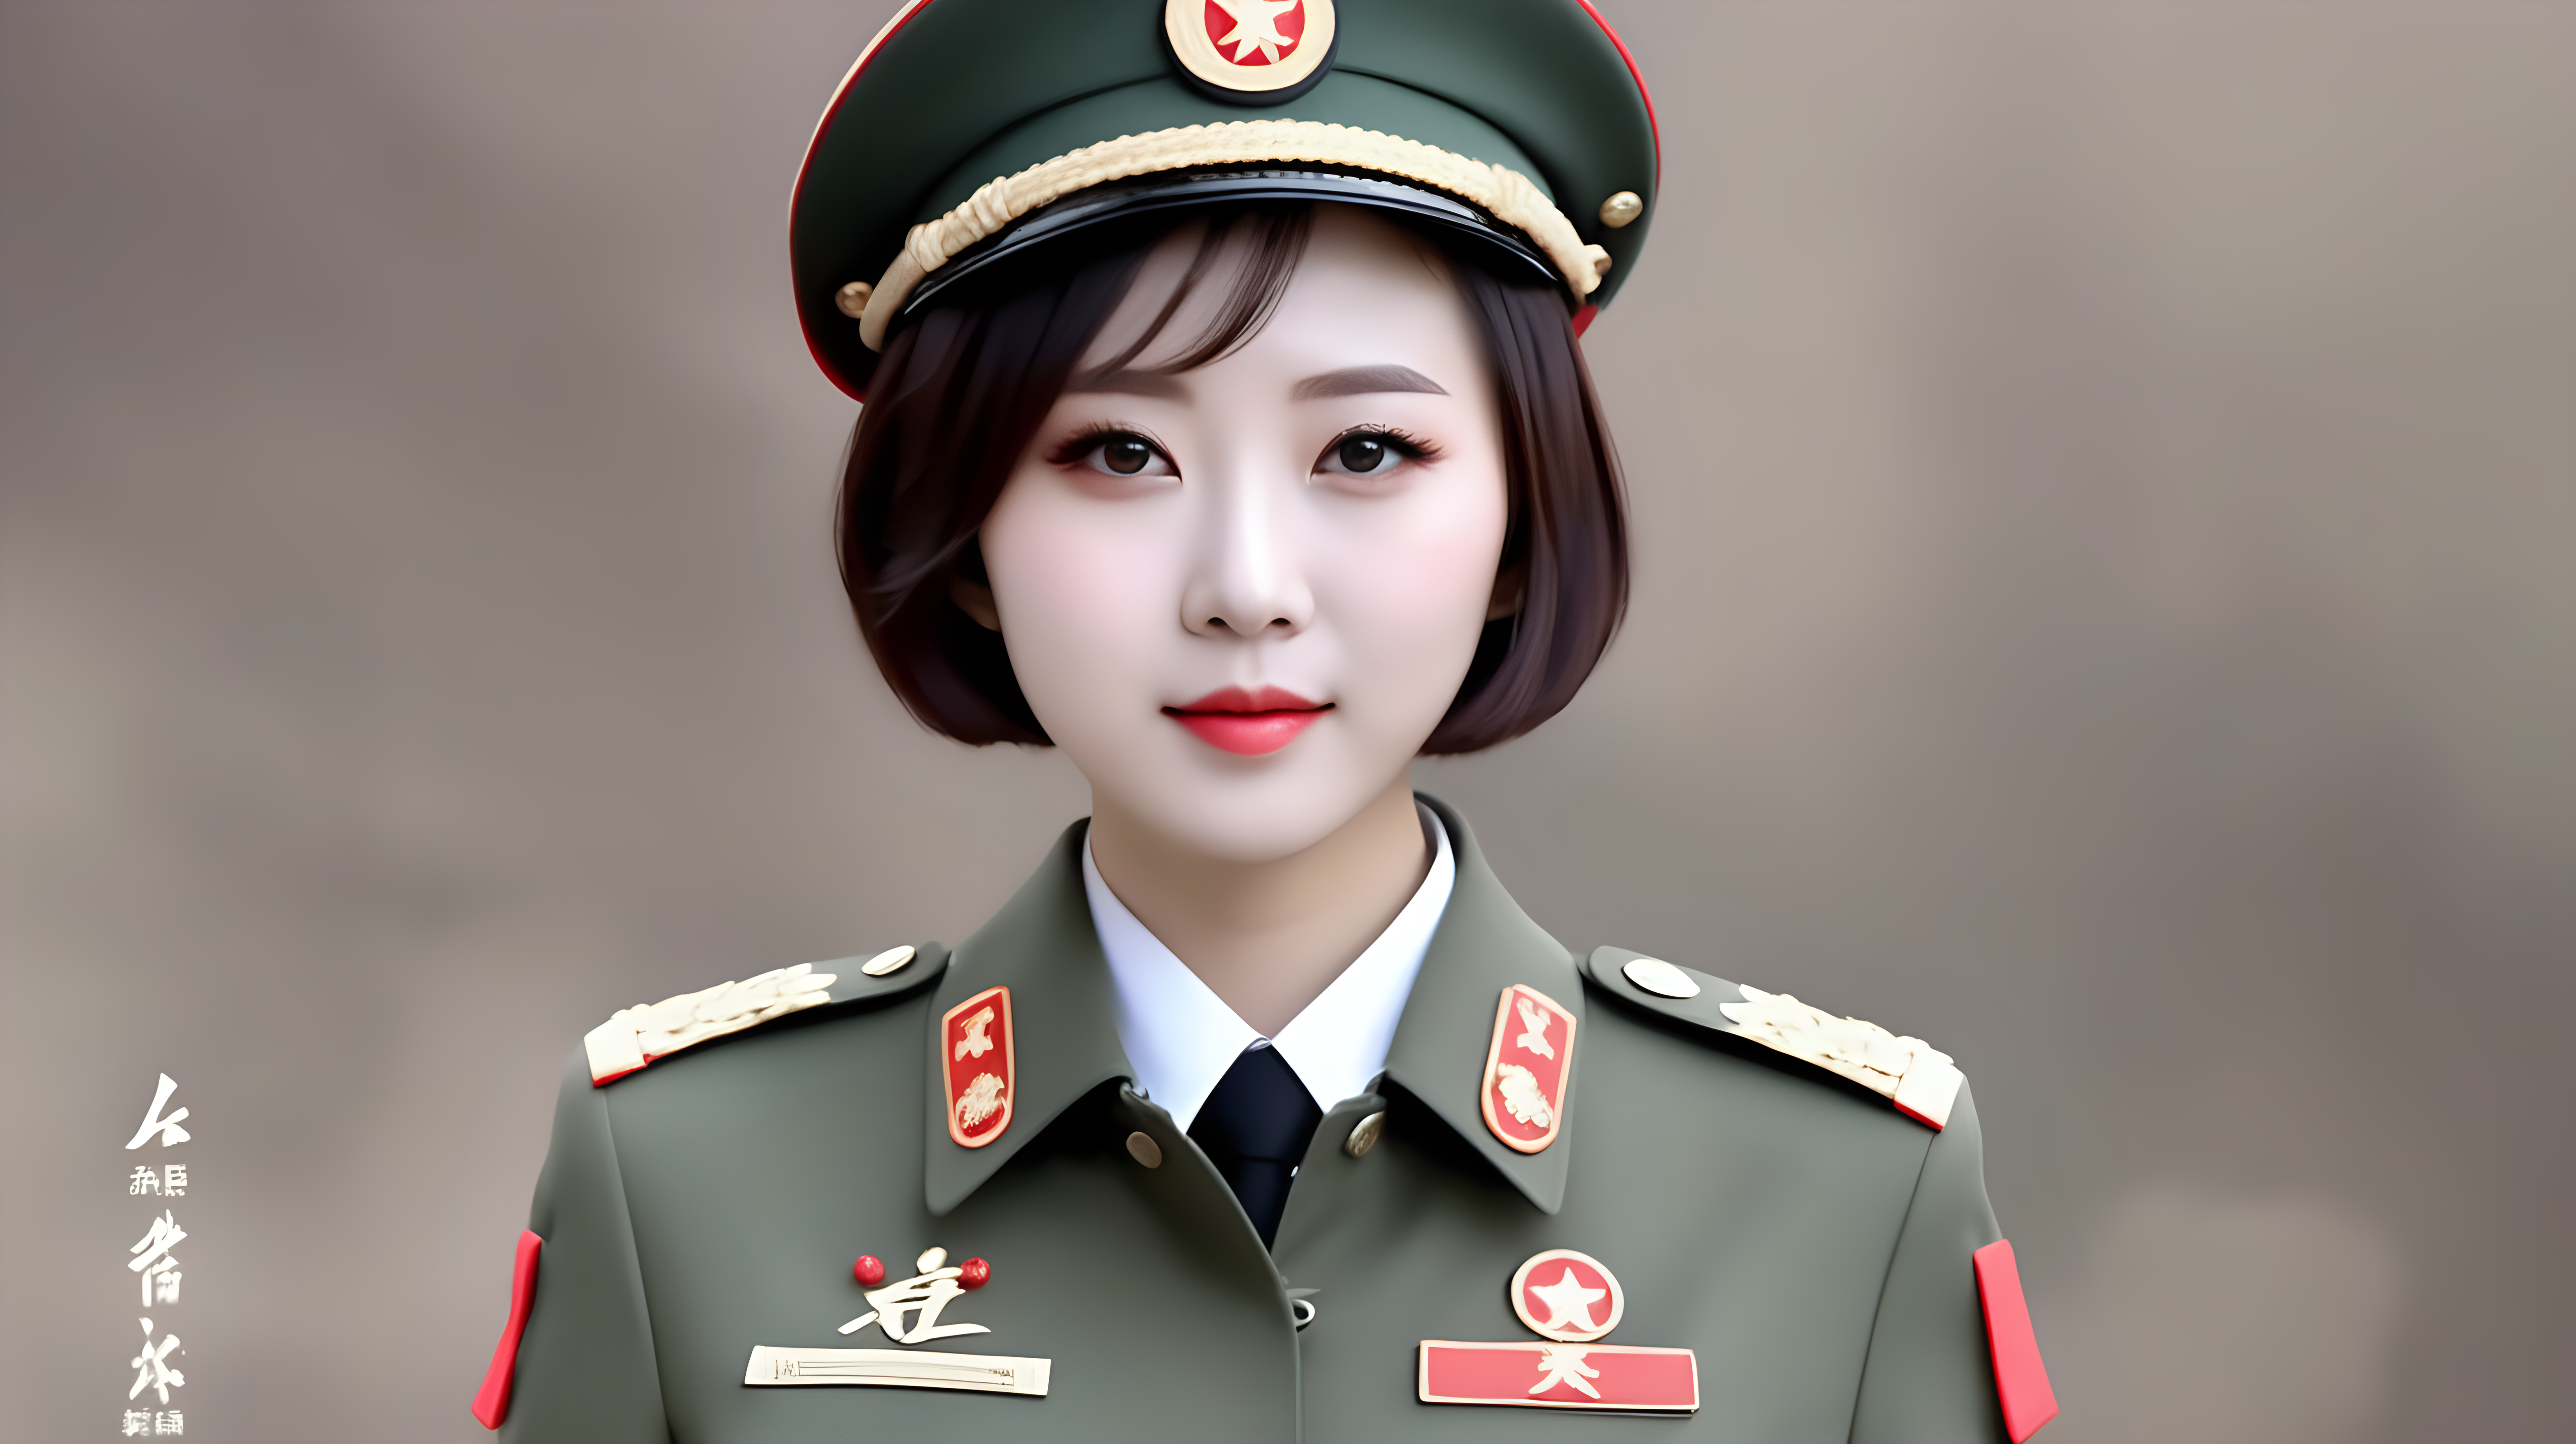 一名短发中国女兵
迷彩服
直播